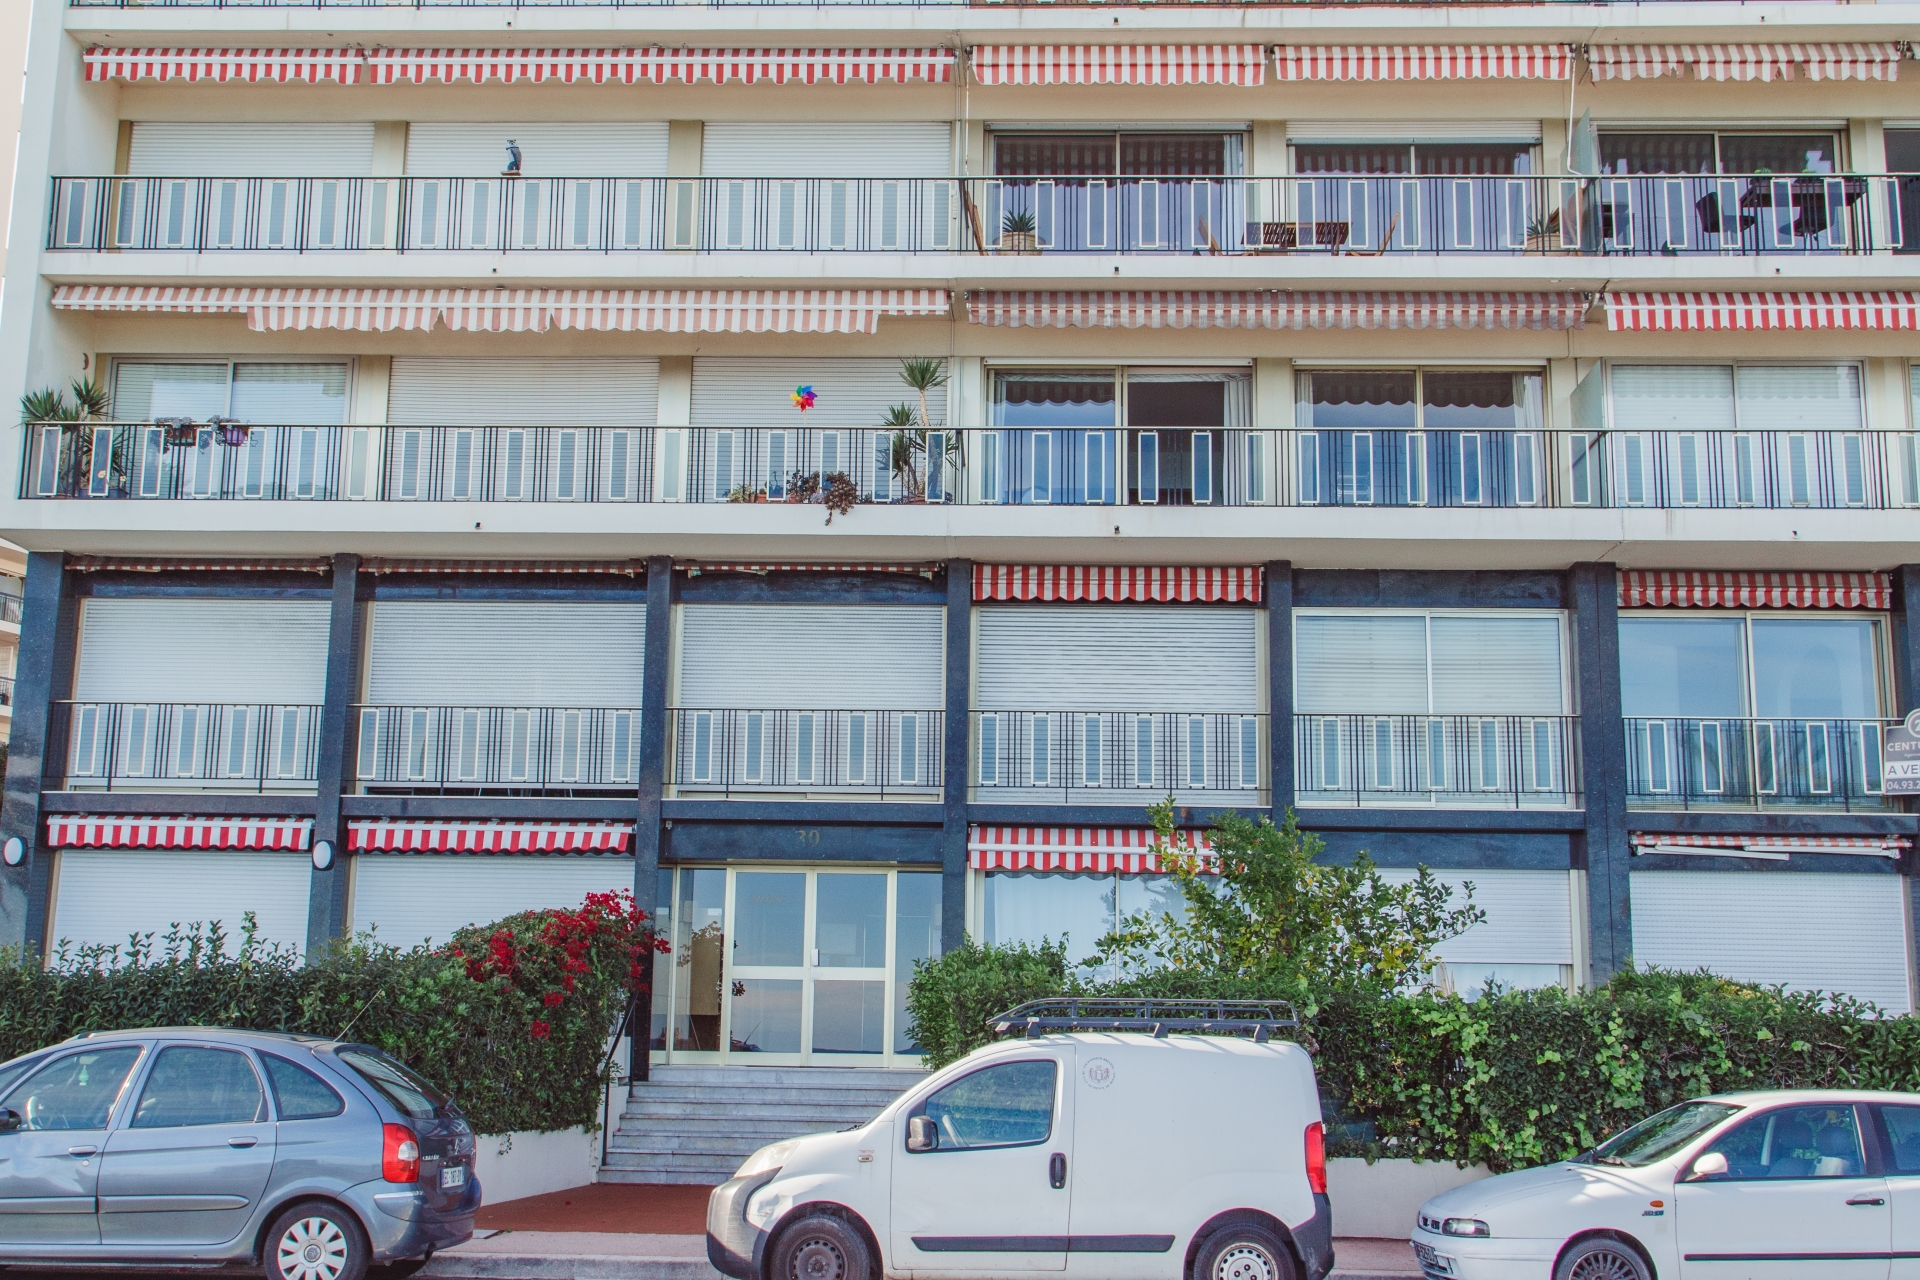 Dotta 3 rooms apartment for sale - ALOES ET BOUGAINVILLIERS - Roquebrune-Cap-Martin - Roquebrune-Cap-Martin - img1114